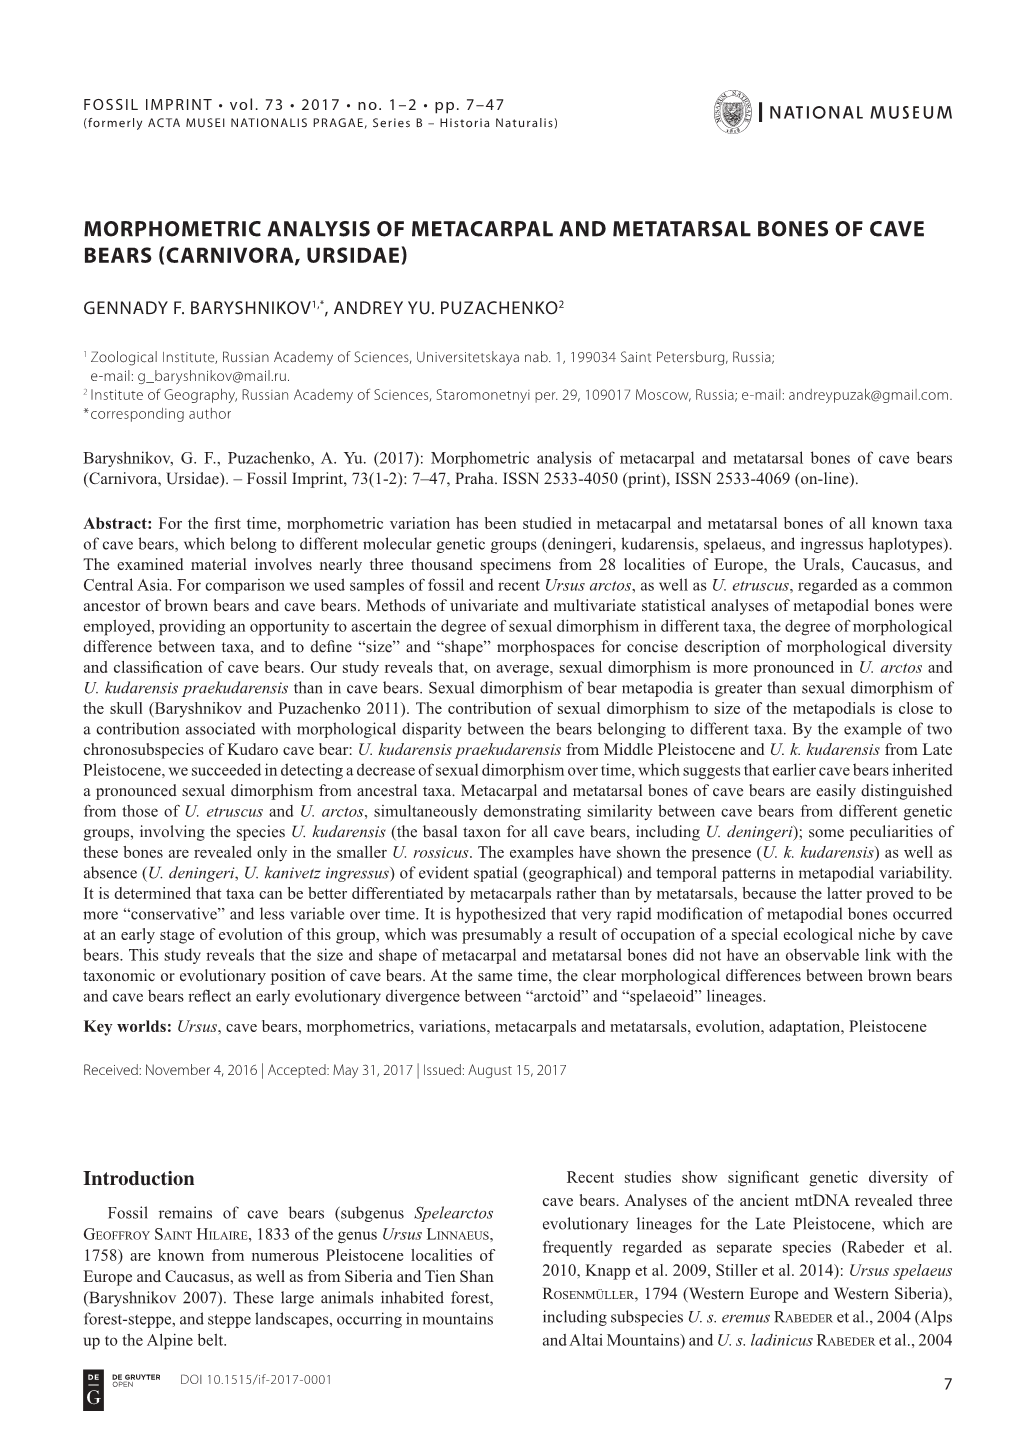 Morphometric Analysis of Metacarpal and Metatarsal Bones of Cave Bears (Carnivora, Ursidae)